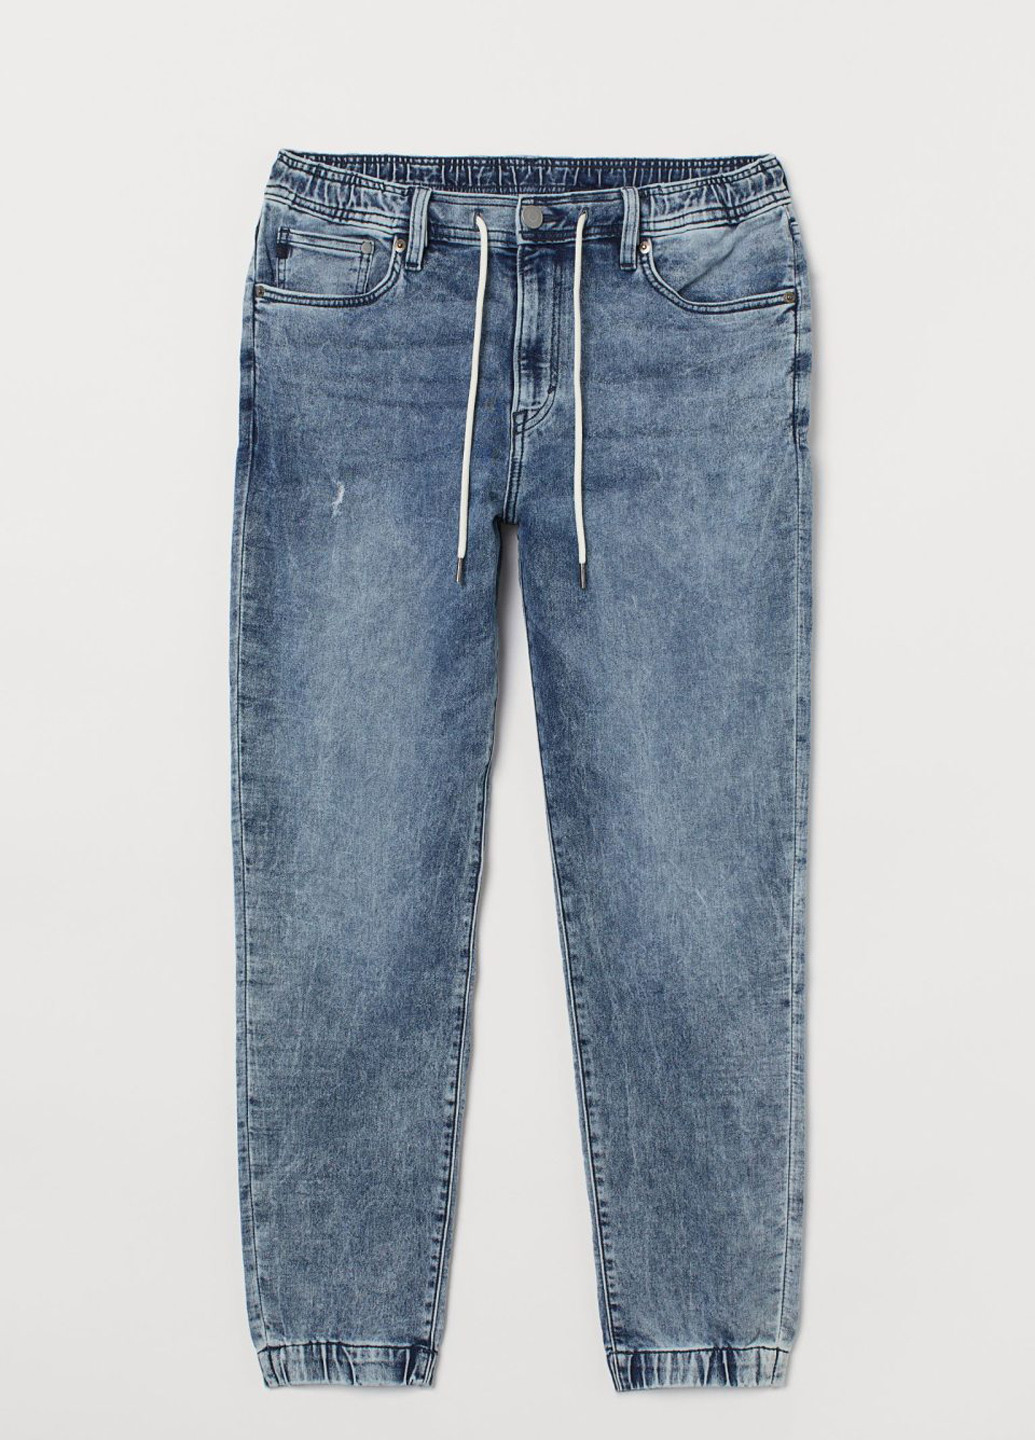 Синие джинсовые демисезонные джоггеры брюки H&M